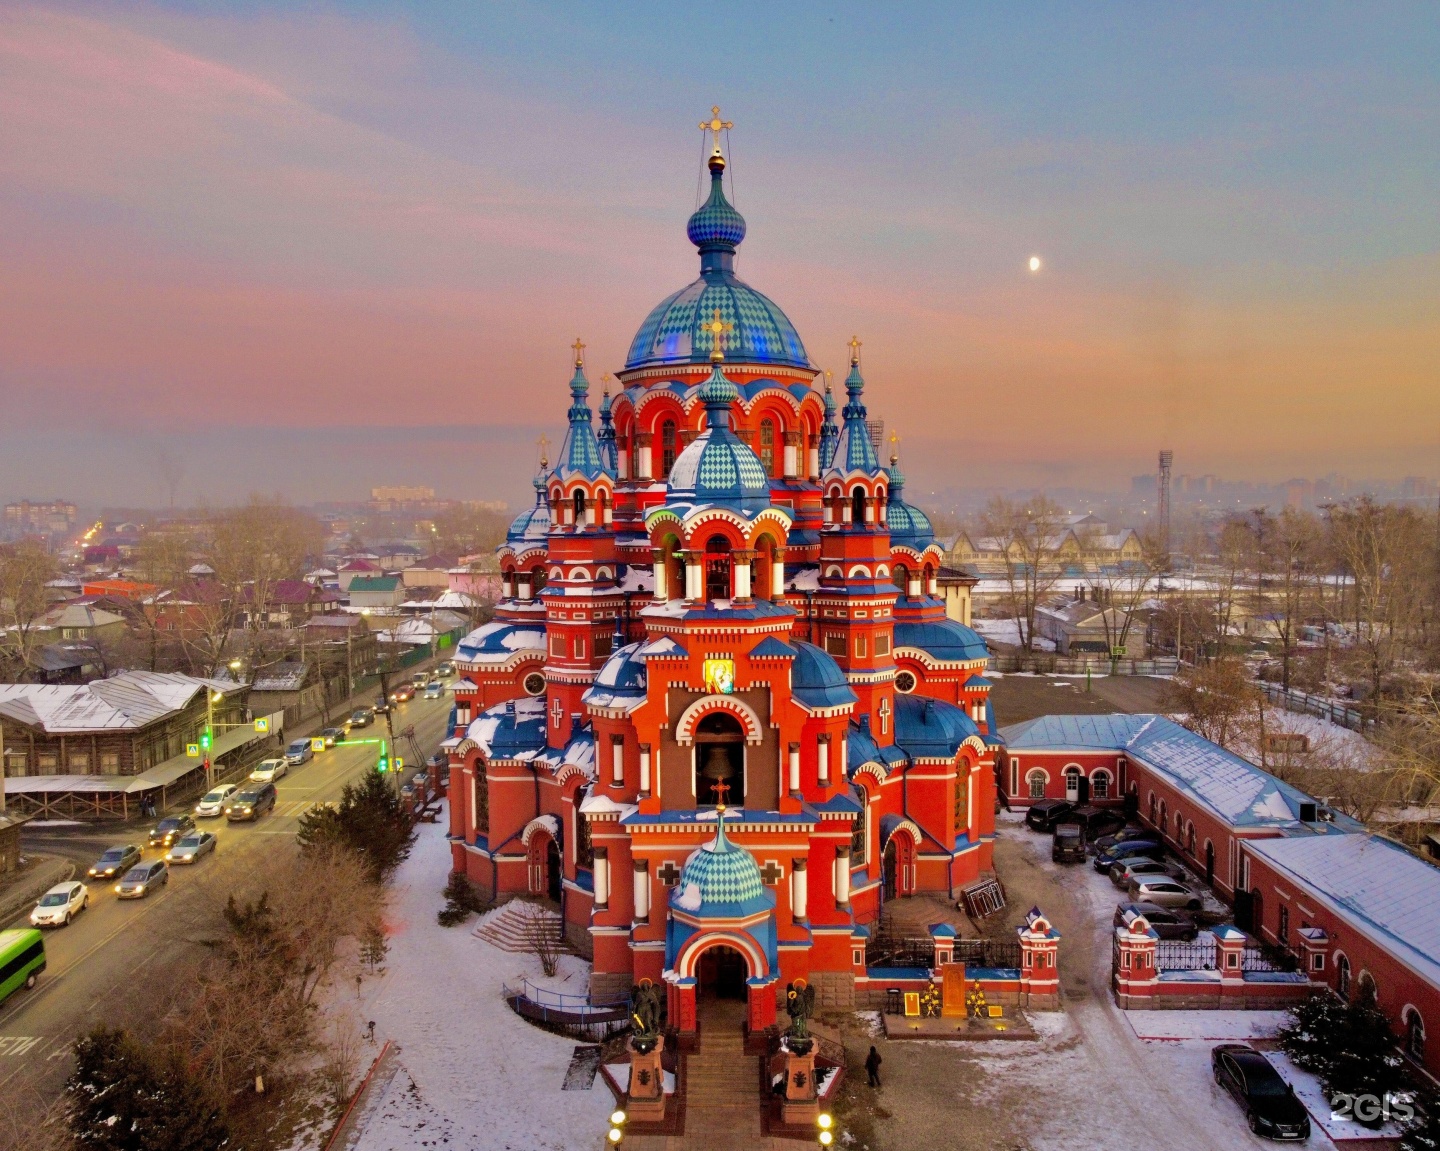 фото казанский собор в иркутске